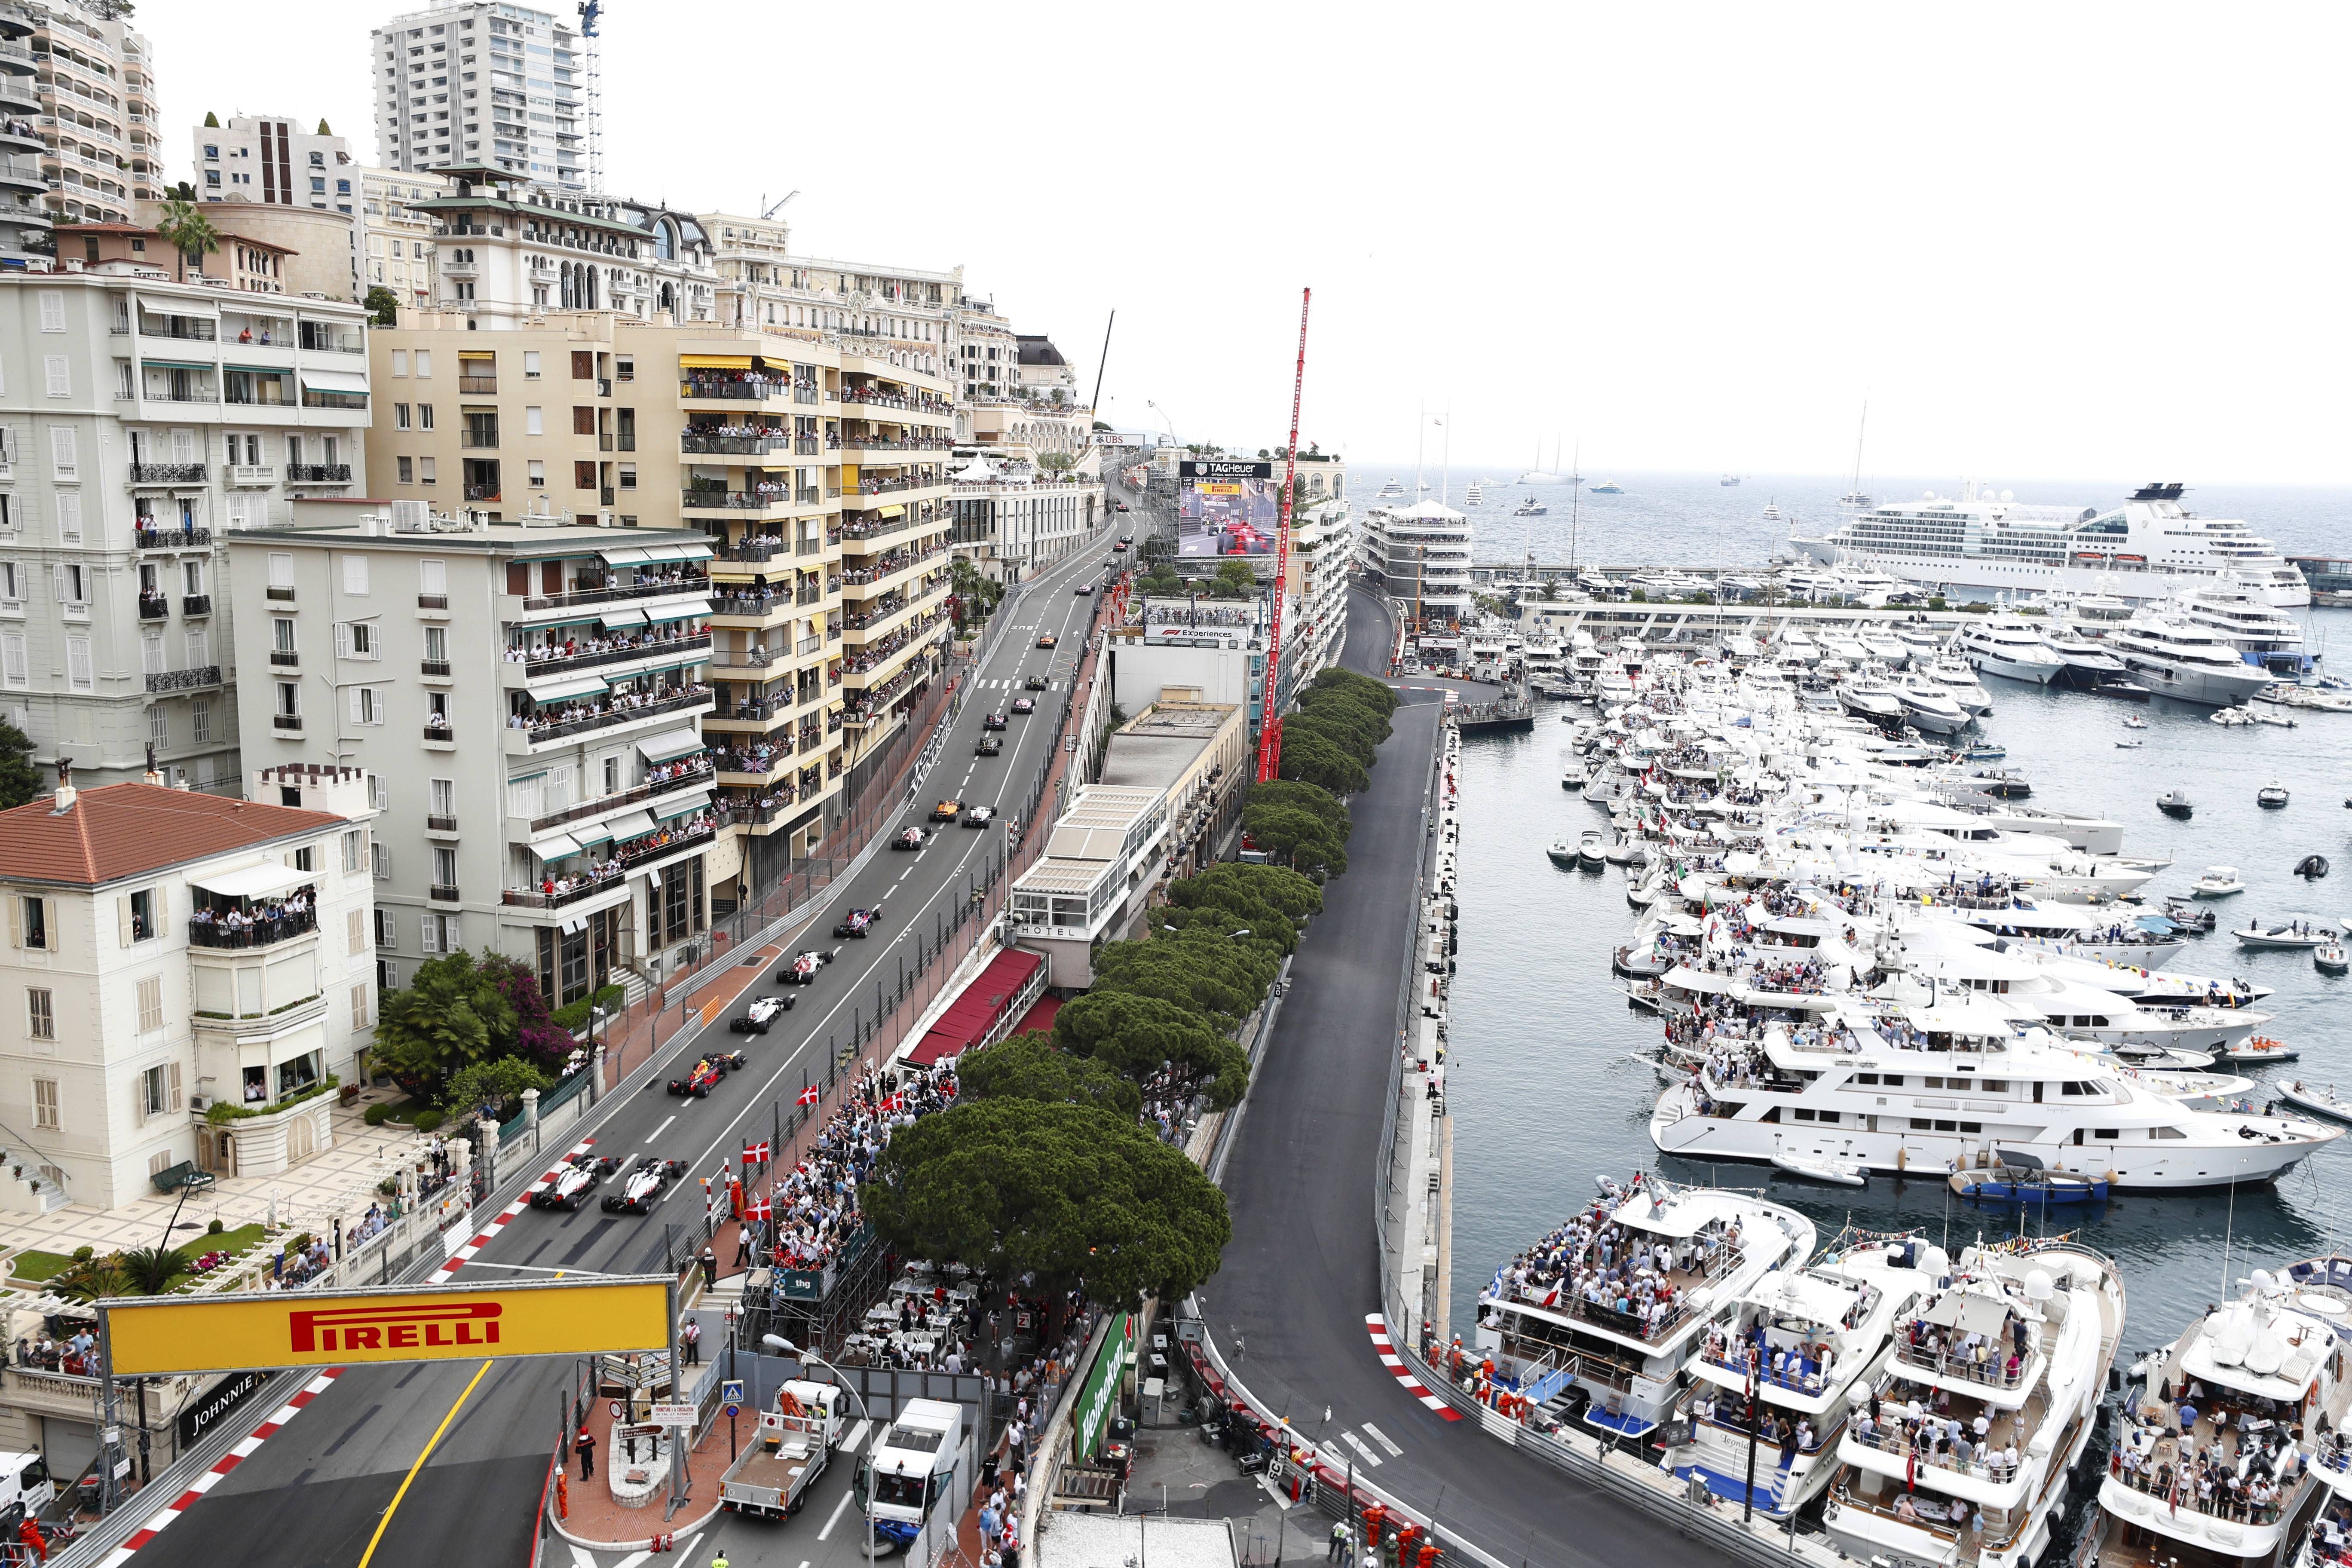 
                <strong>Circuit de Monaco, Monaco </strong><br>
                Formel 1-Boliden zwischen Luxuswohnungen, blauem Meer und Yachten: Das ist seit Jahrzehnten das Bild des Großen Preis von Monaco. Der Kurs in Monte Carlo zählt zu den absoluten Klassikern der Formel 1-Saison. Seit 1950 gastiert der Rennzirkus alljährlich im Mai im Fürstentum. Auf 3,337 Kilometern geht es vorbei am Casino, dem Yachthafen, die Rascasse - alles berühmte Streckenteile. Mit sechs Erfolgen im Fürstentum hält der 1994 verstorbene Ayton Senna den Siegrekord. Die Haarnadel am Hotel Fairmont ist die langsamste Stelle im gesamten Rennkalender.
              